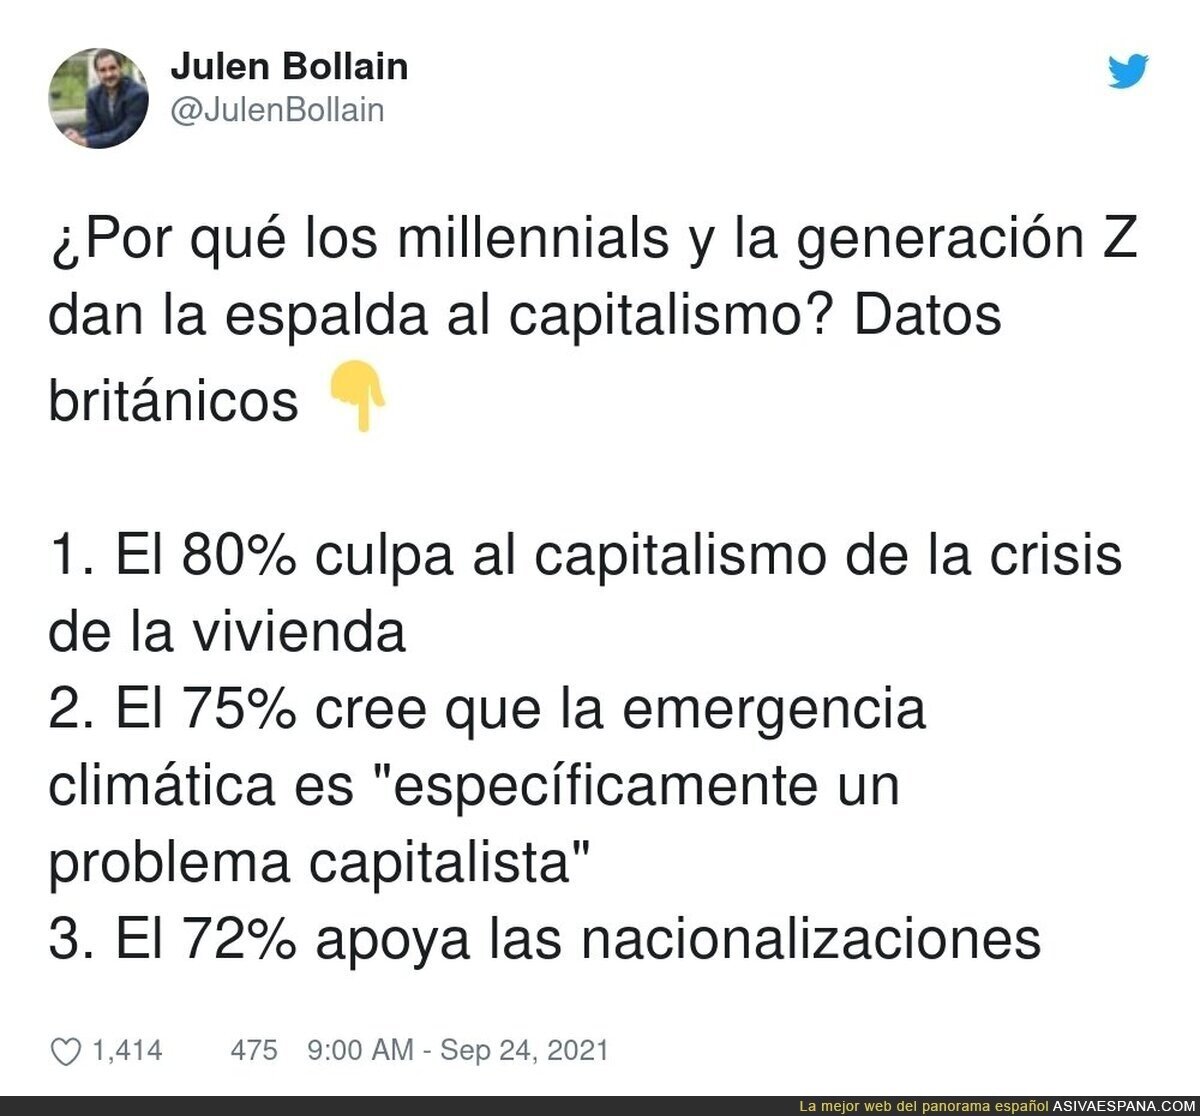 El capitalismo no es bienvenido entre los jóvenes